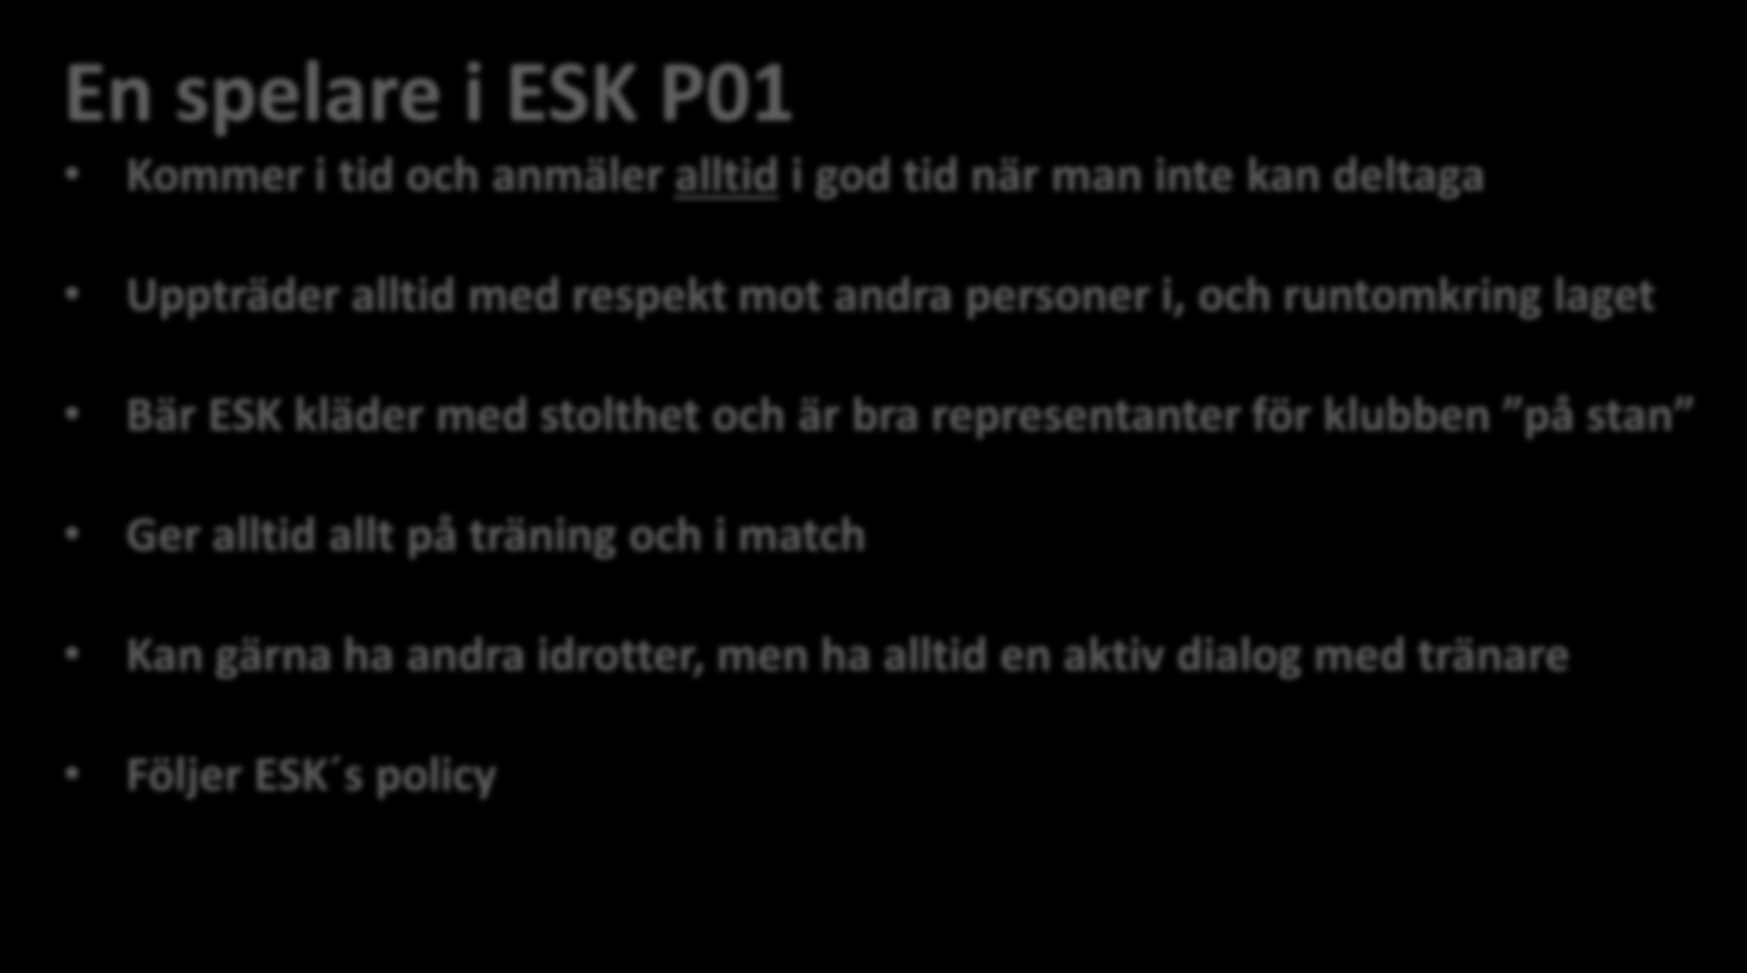 En spelare i ESK P01 Kommer i tid och anmäler alltid i god tid när man inte kan deltaga Uppträder alltid med respekt mot andra personer i, och runtomkring laget Bär ESK kläder med